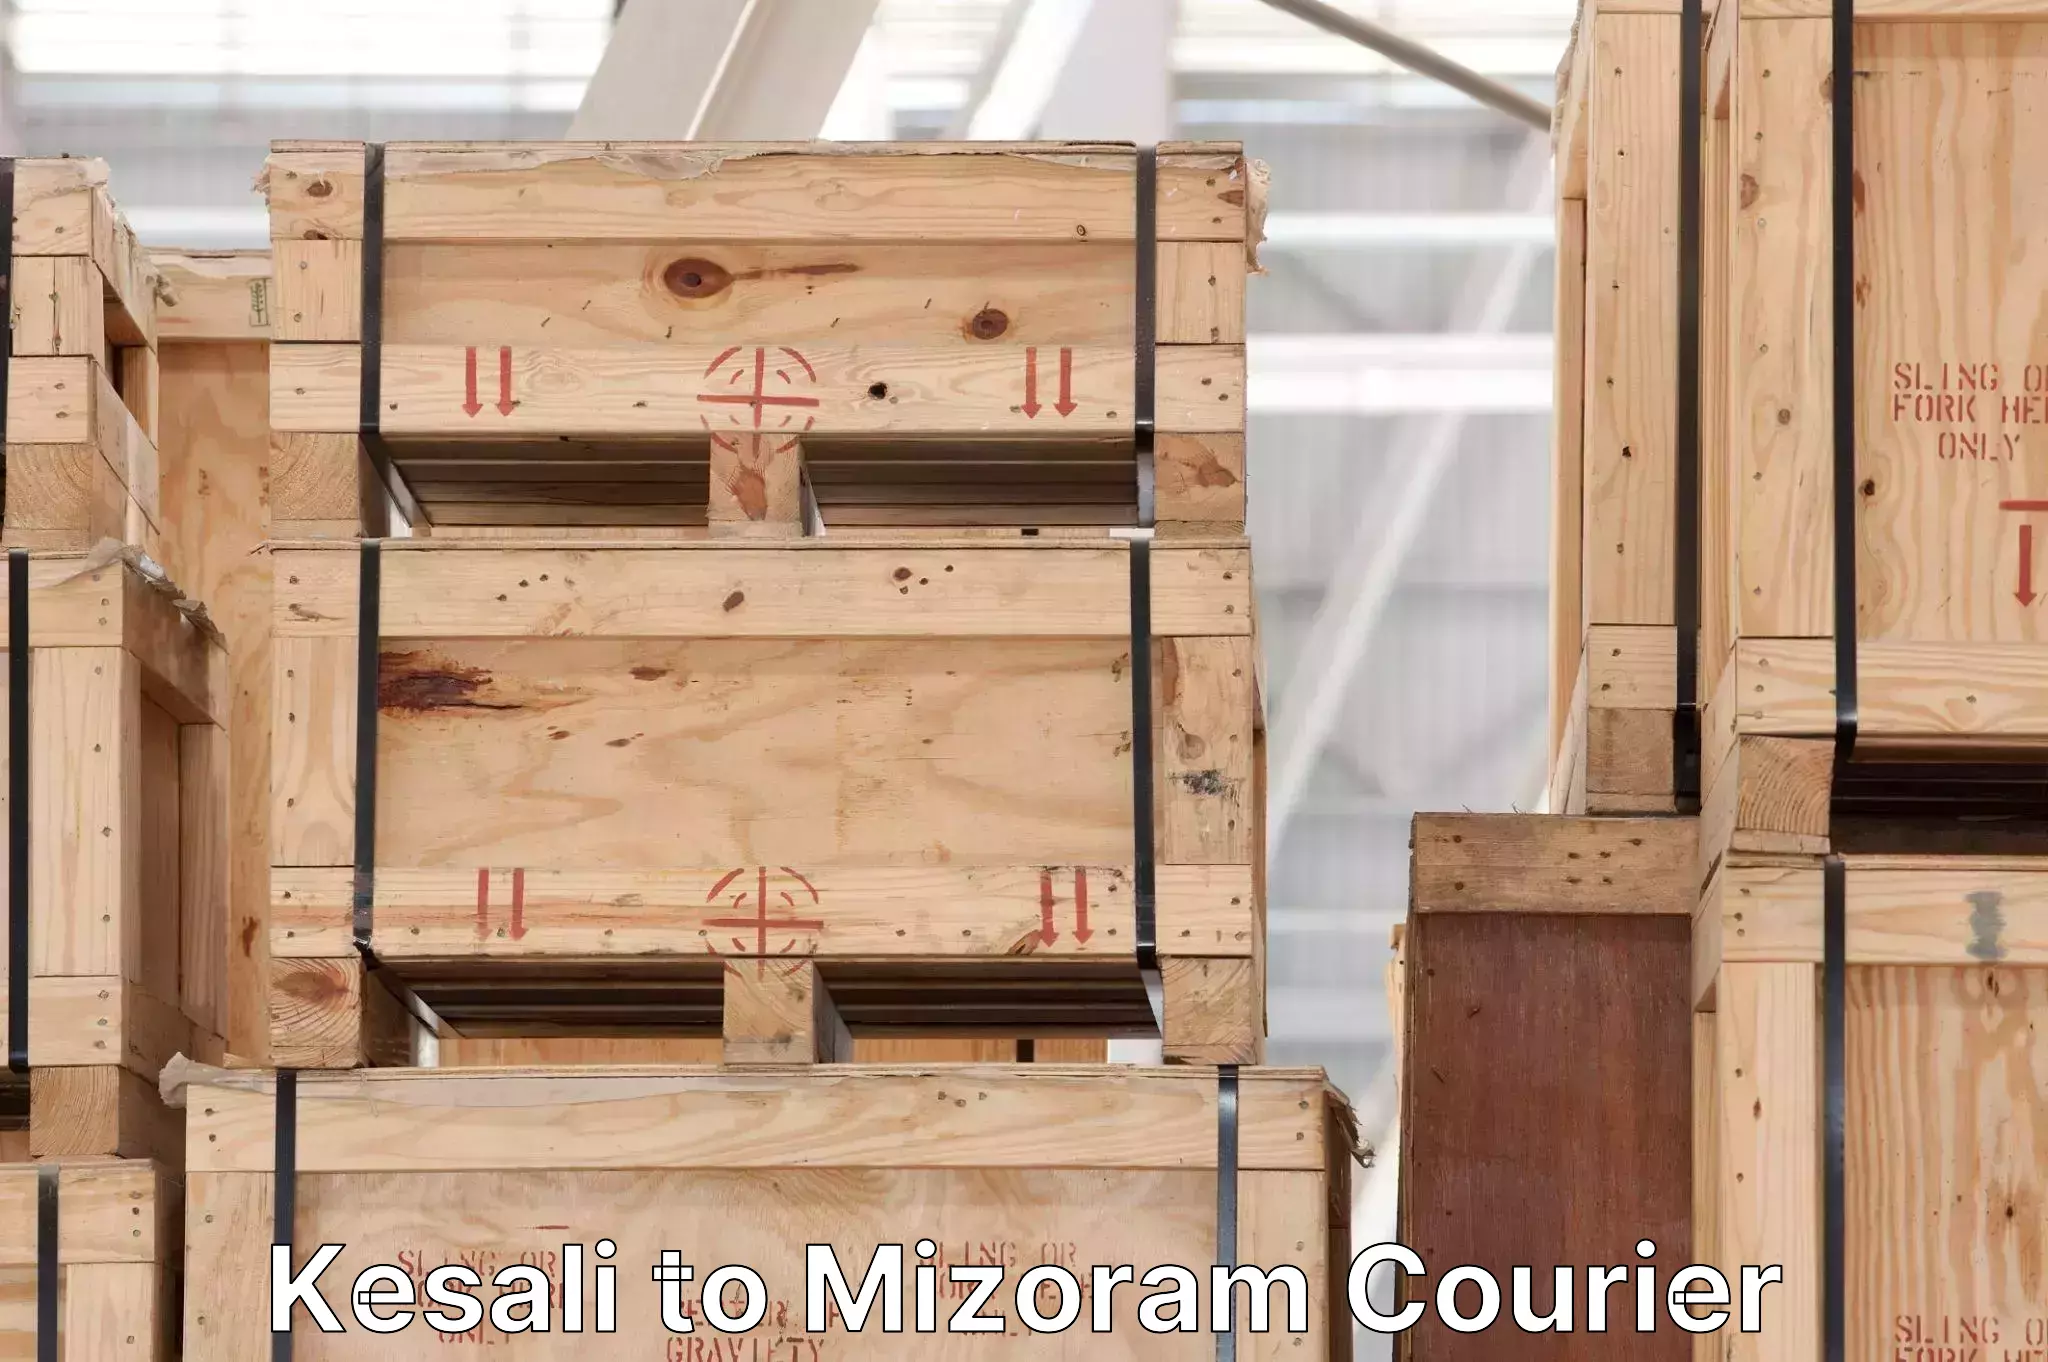 Reliable package handling Kesali to Mizoram